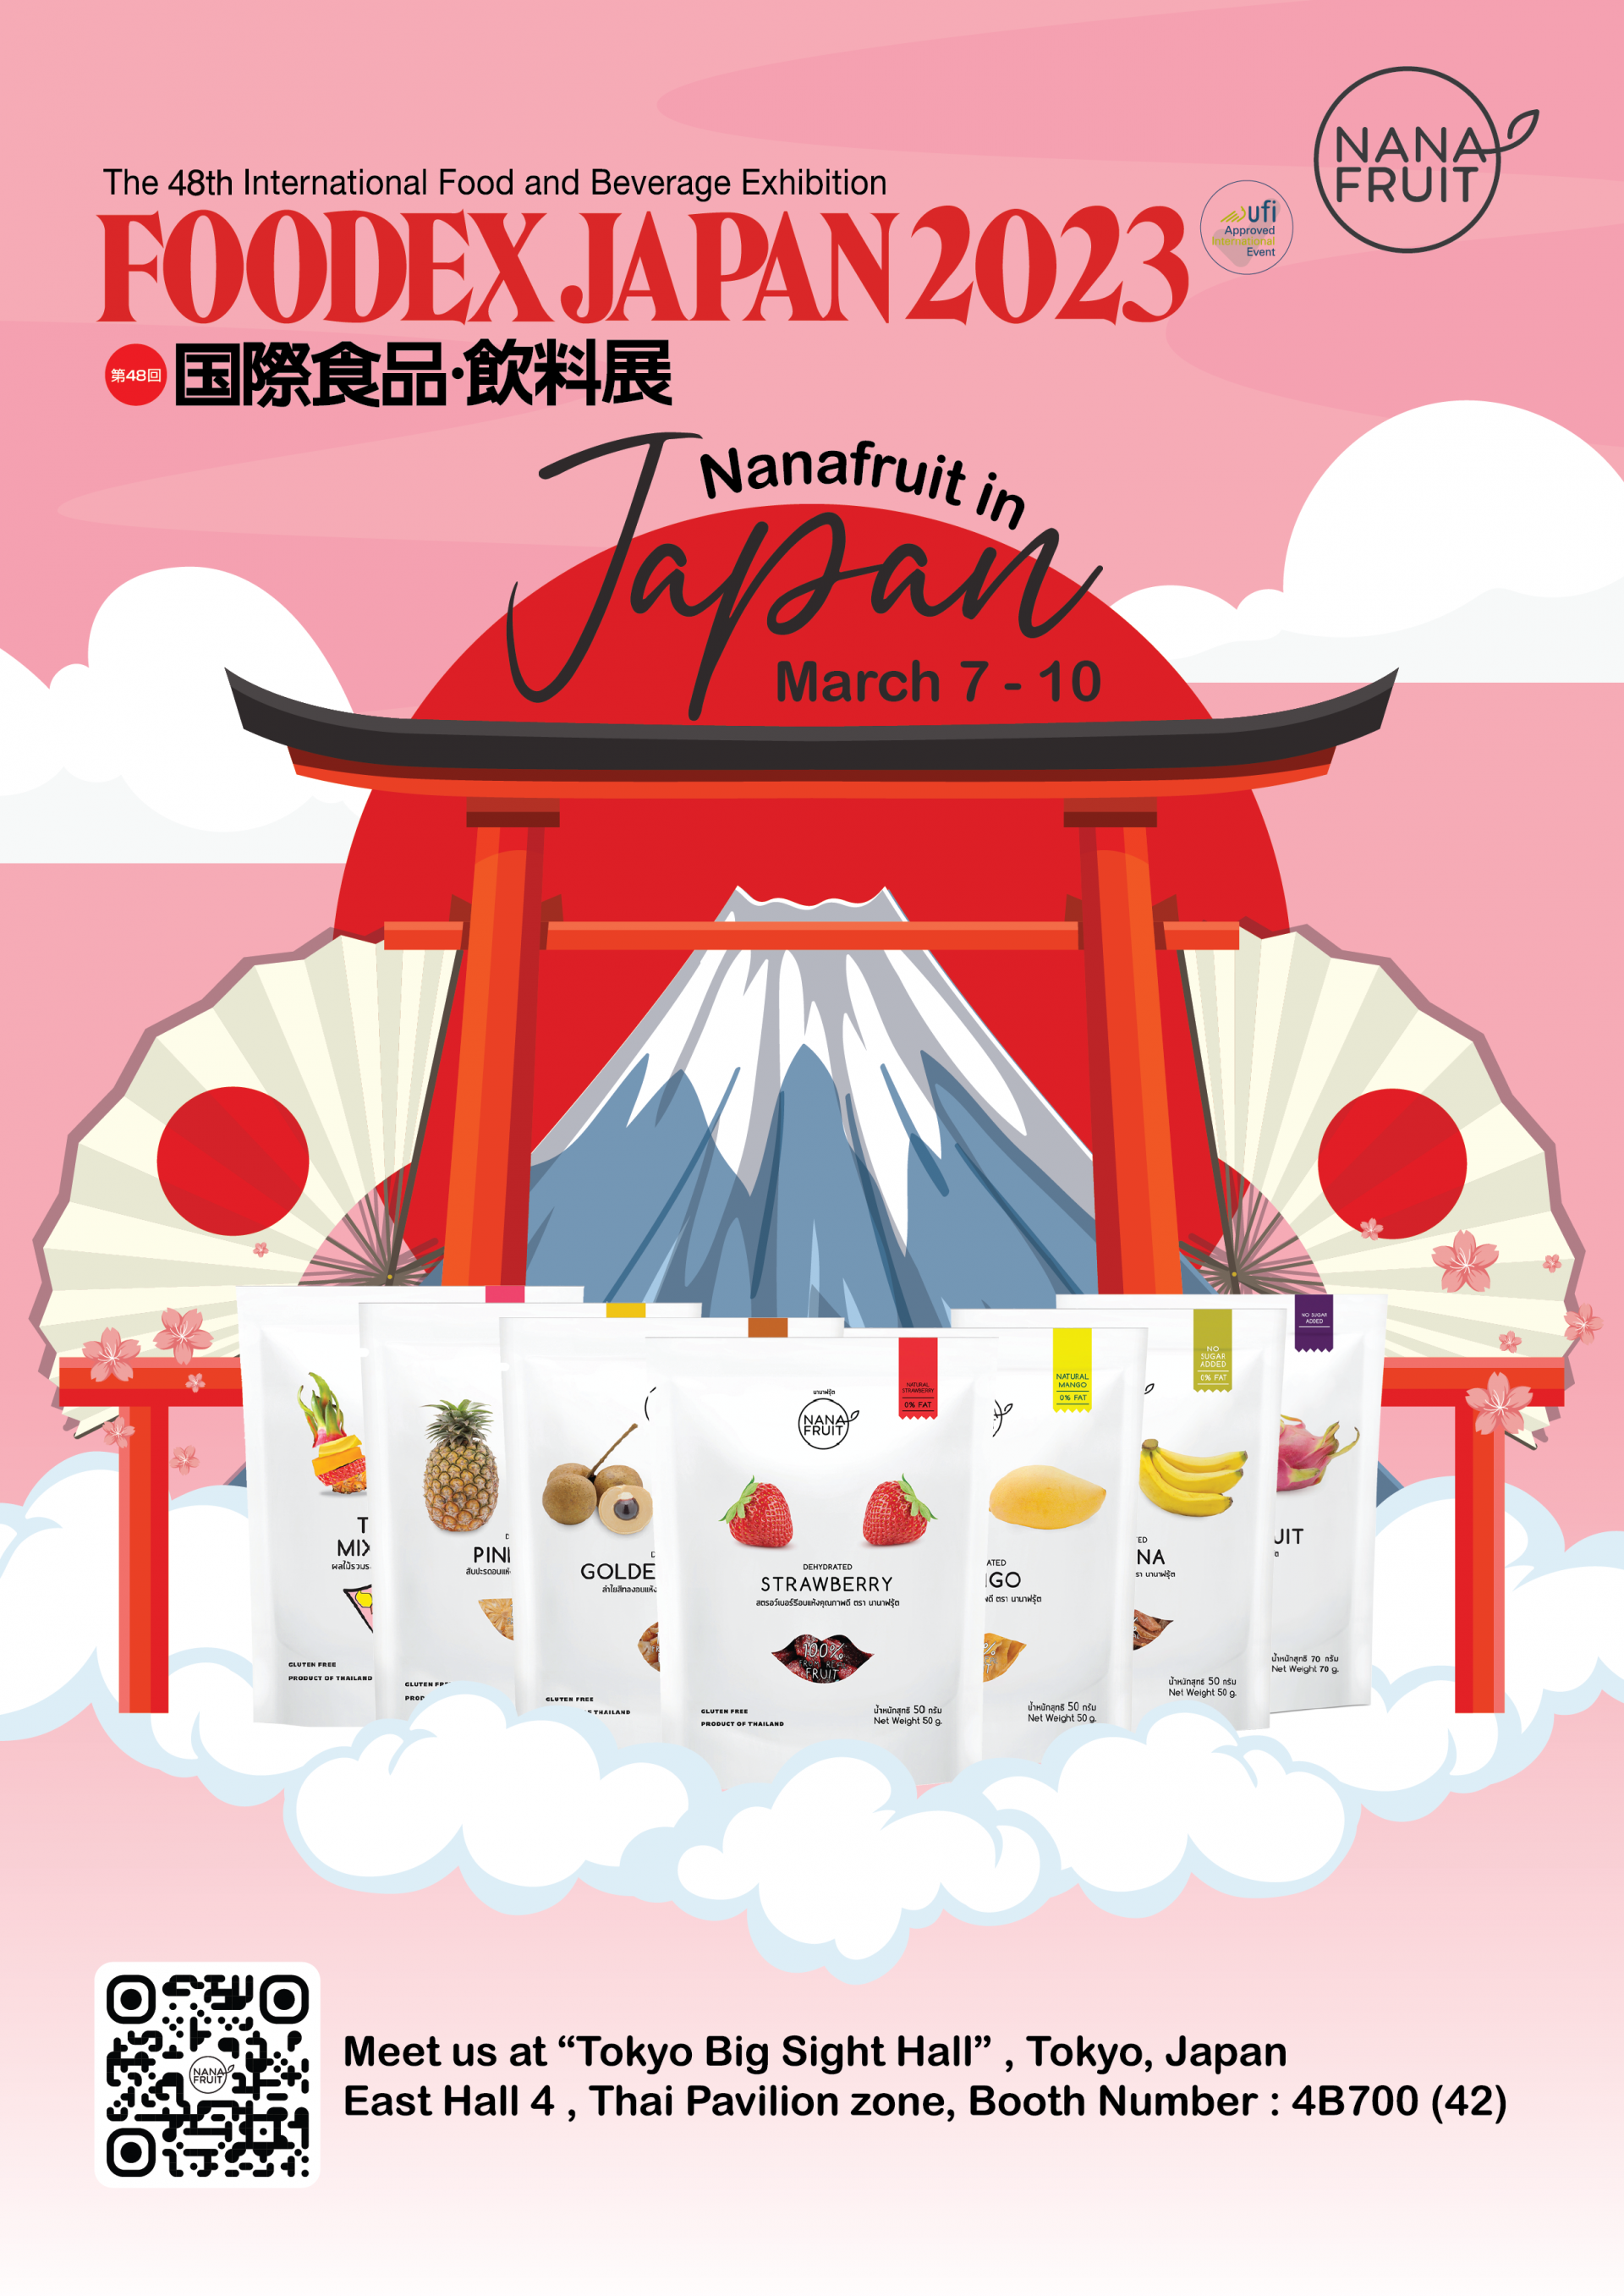 Nanafruit at "Foodex Japan 2023"